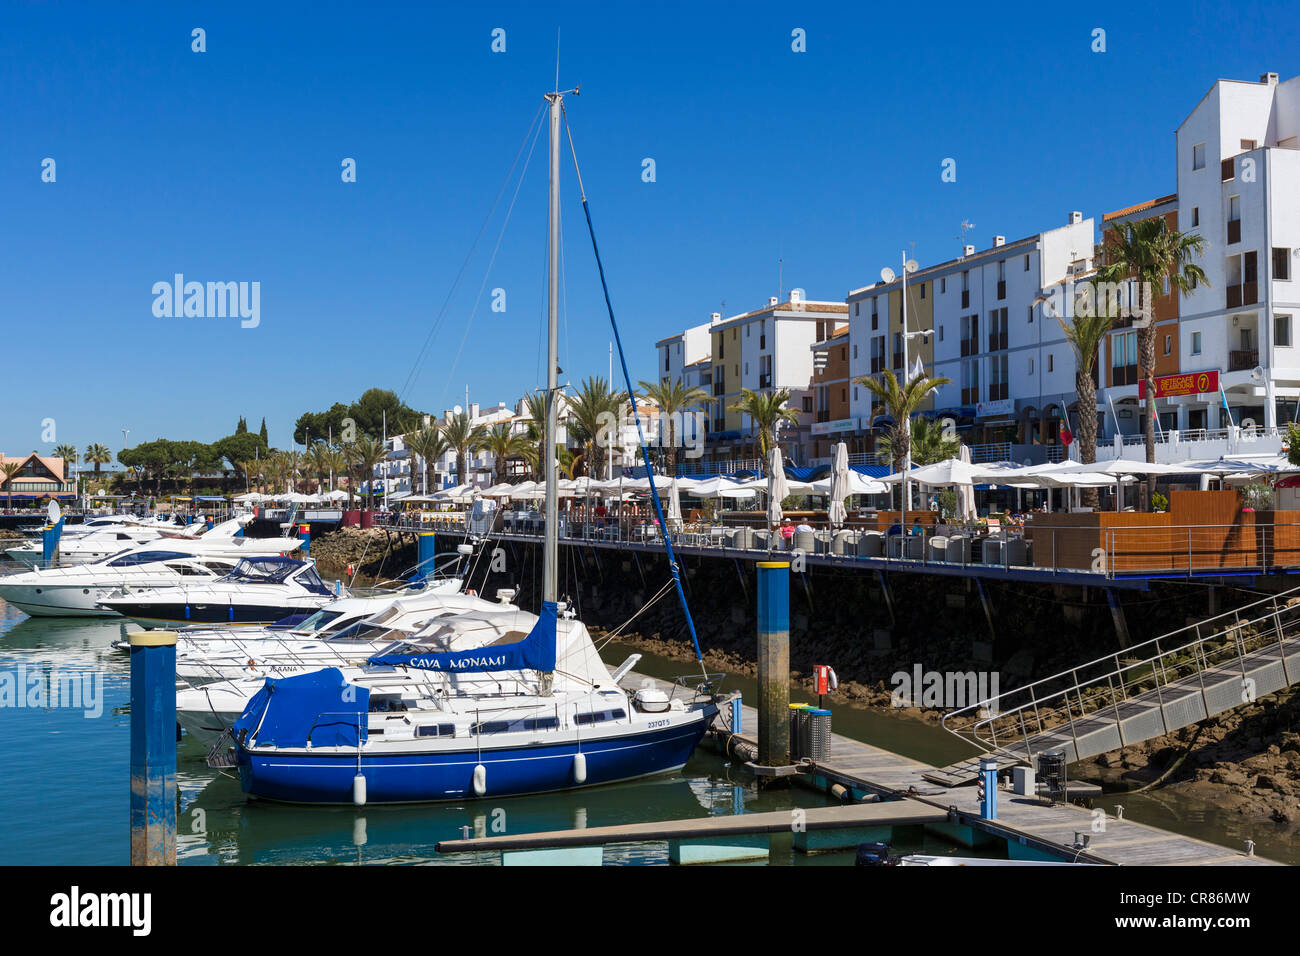 Yachts in the marina in Vilamoura, Algarve, Portugal Stock Photo